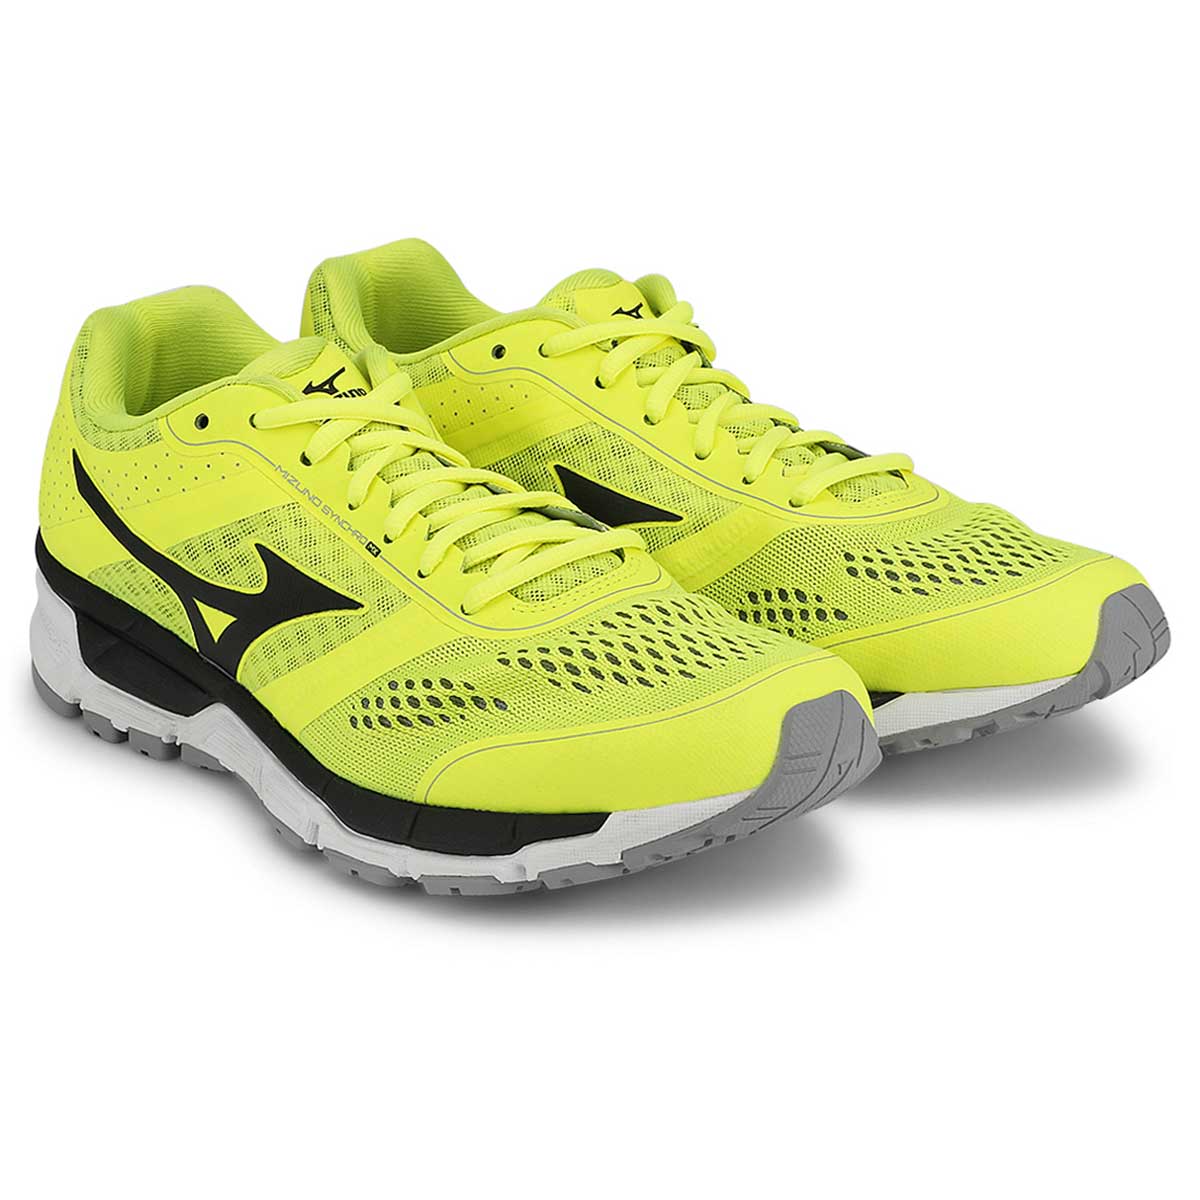 buy mizuno running shoes online